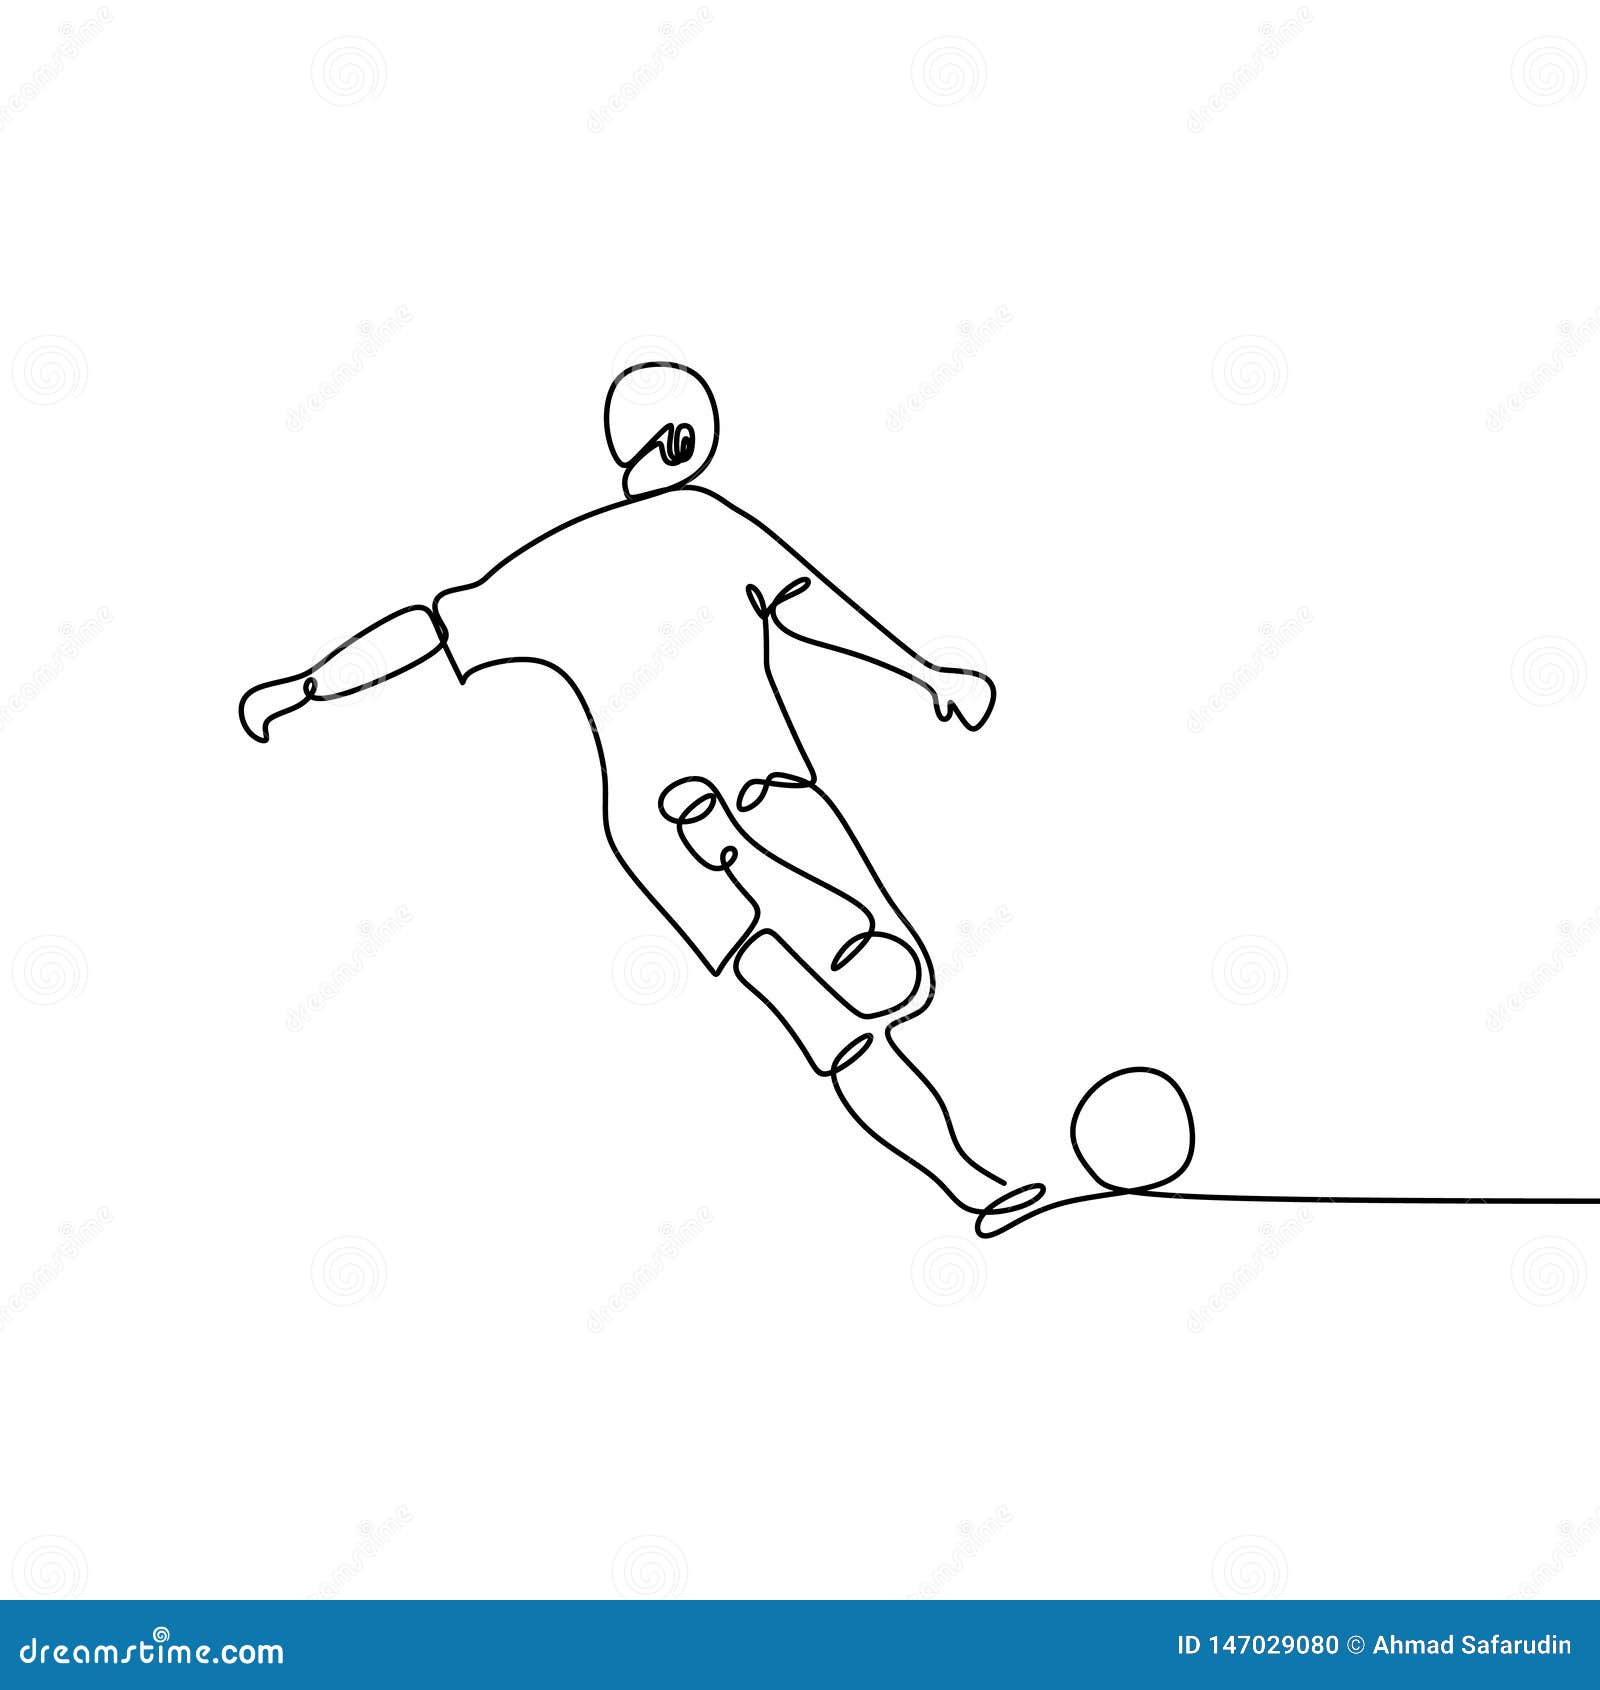 A Lápis Desenho Contínuo De Jogadores De Futebol De Corrida Do Futebol  Jogadores De Futebol Que Retrocedem O Jogo De F?sforo Do F Ilustração do  Vetor - Ilustração de ativo, ostentar: 152987473